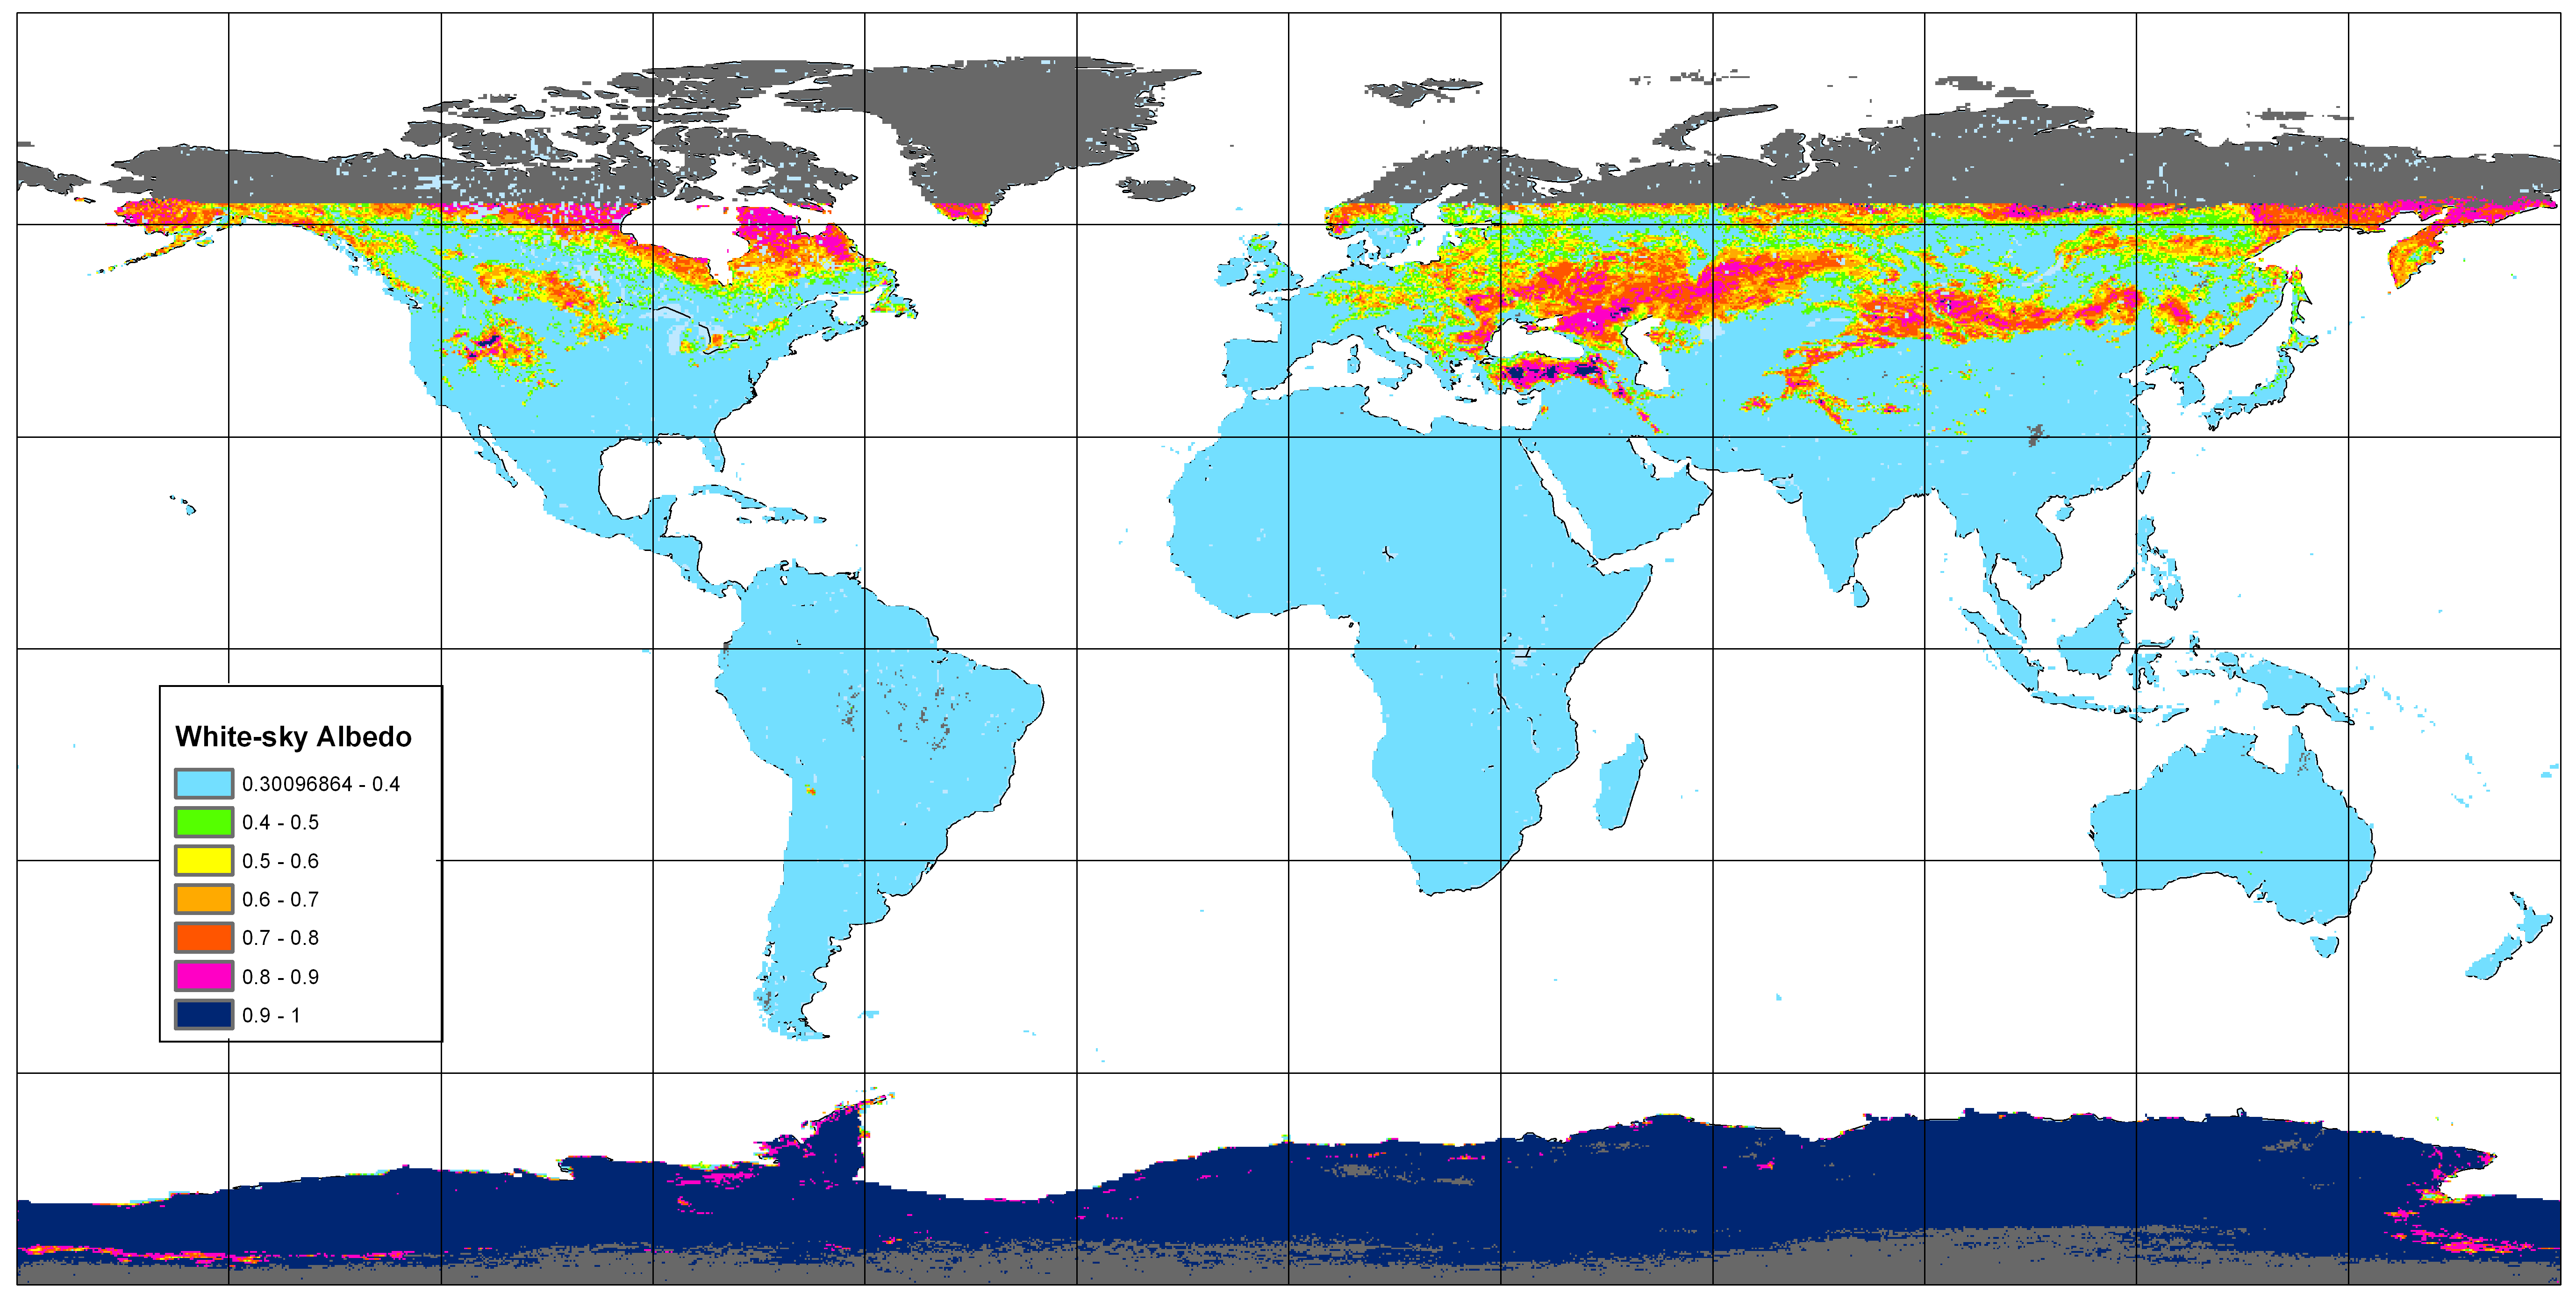 Global Map of White-Sky Albedo